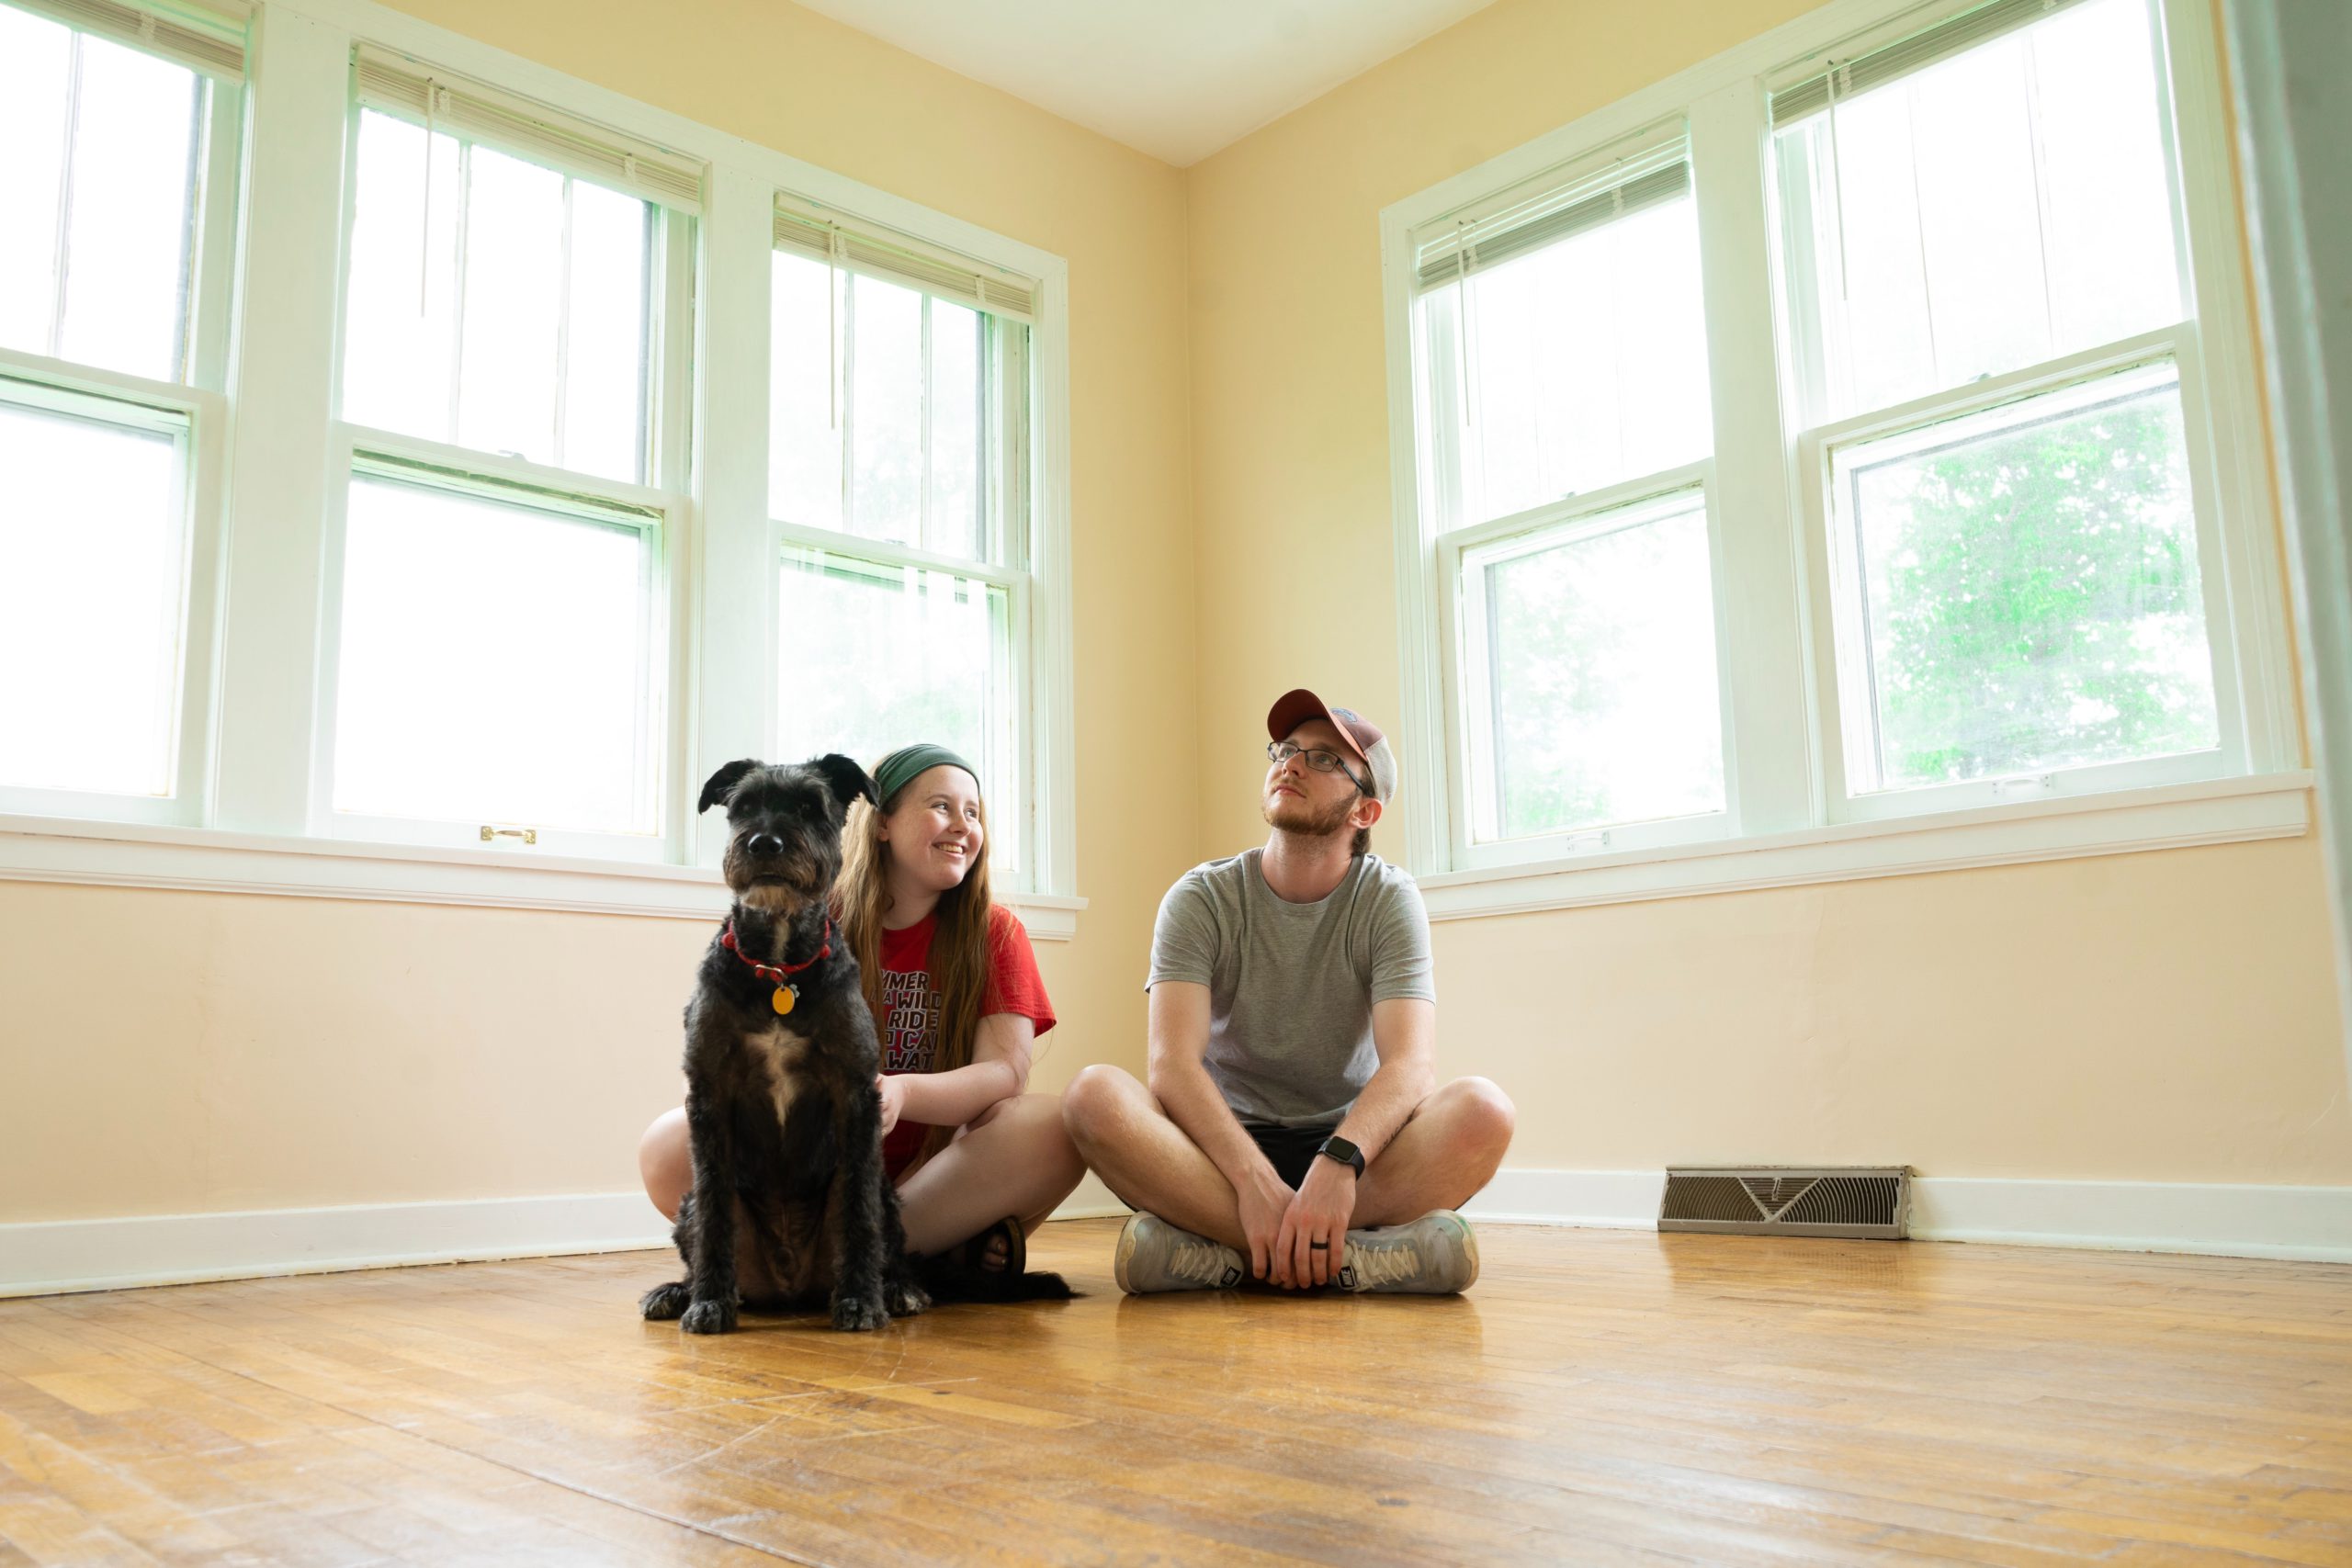 Comprar casa própria: homem, mulher e cachorro sentados no chão de uma casa sem móveis